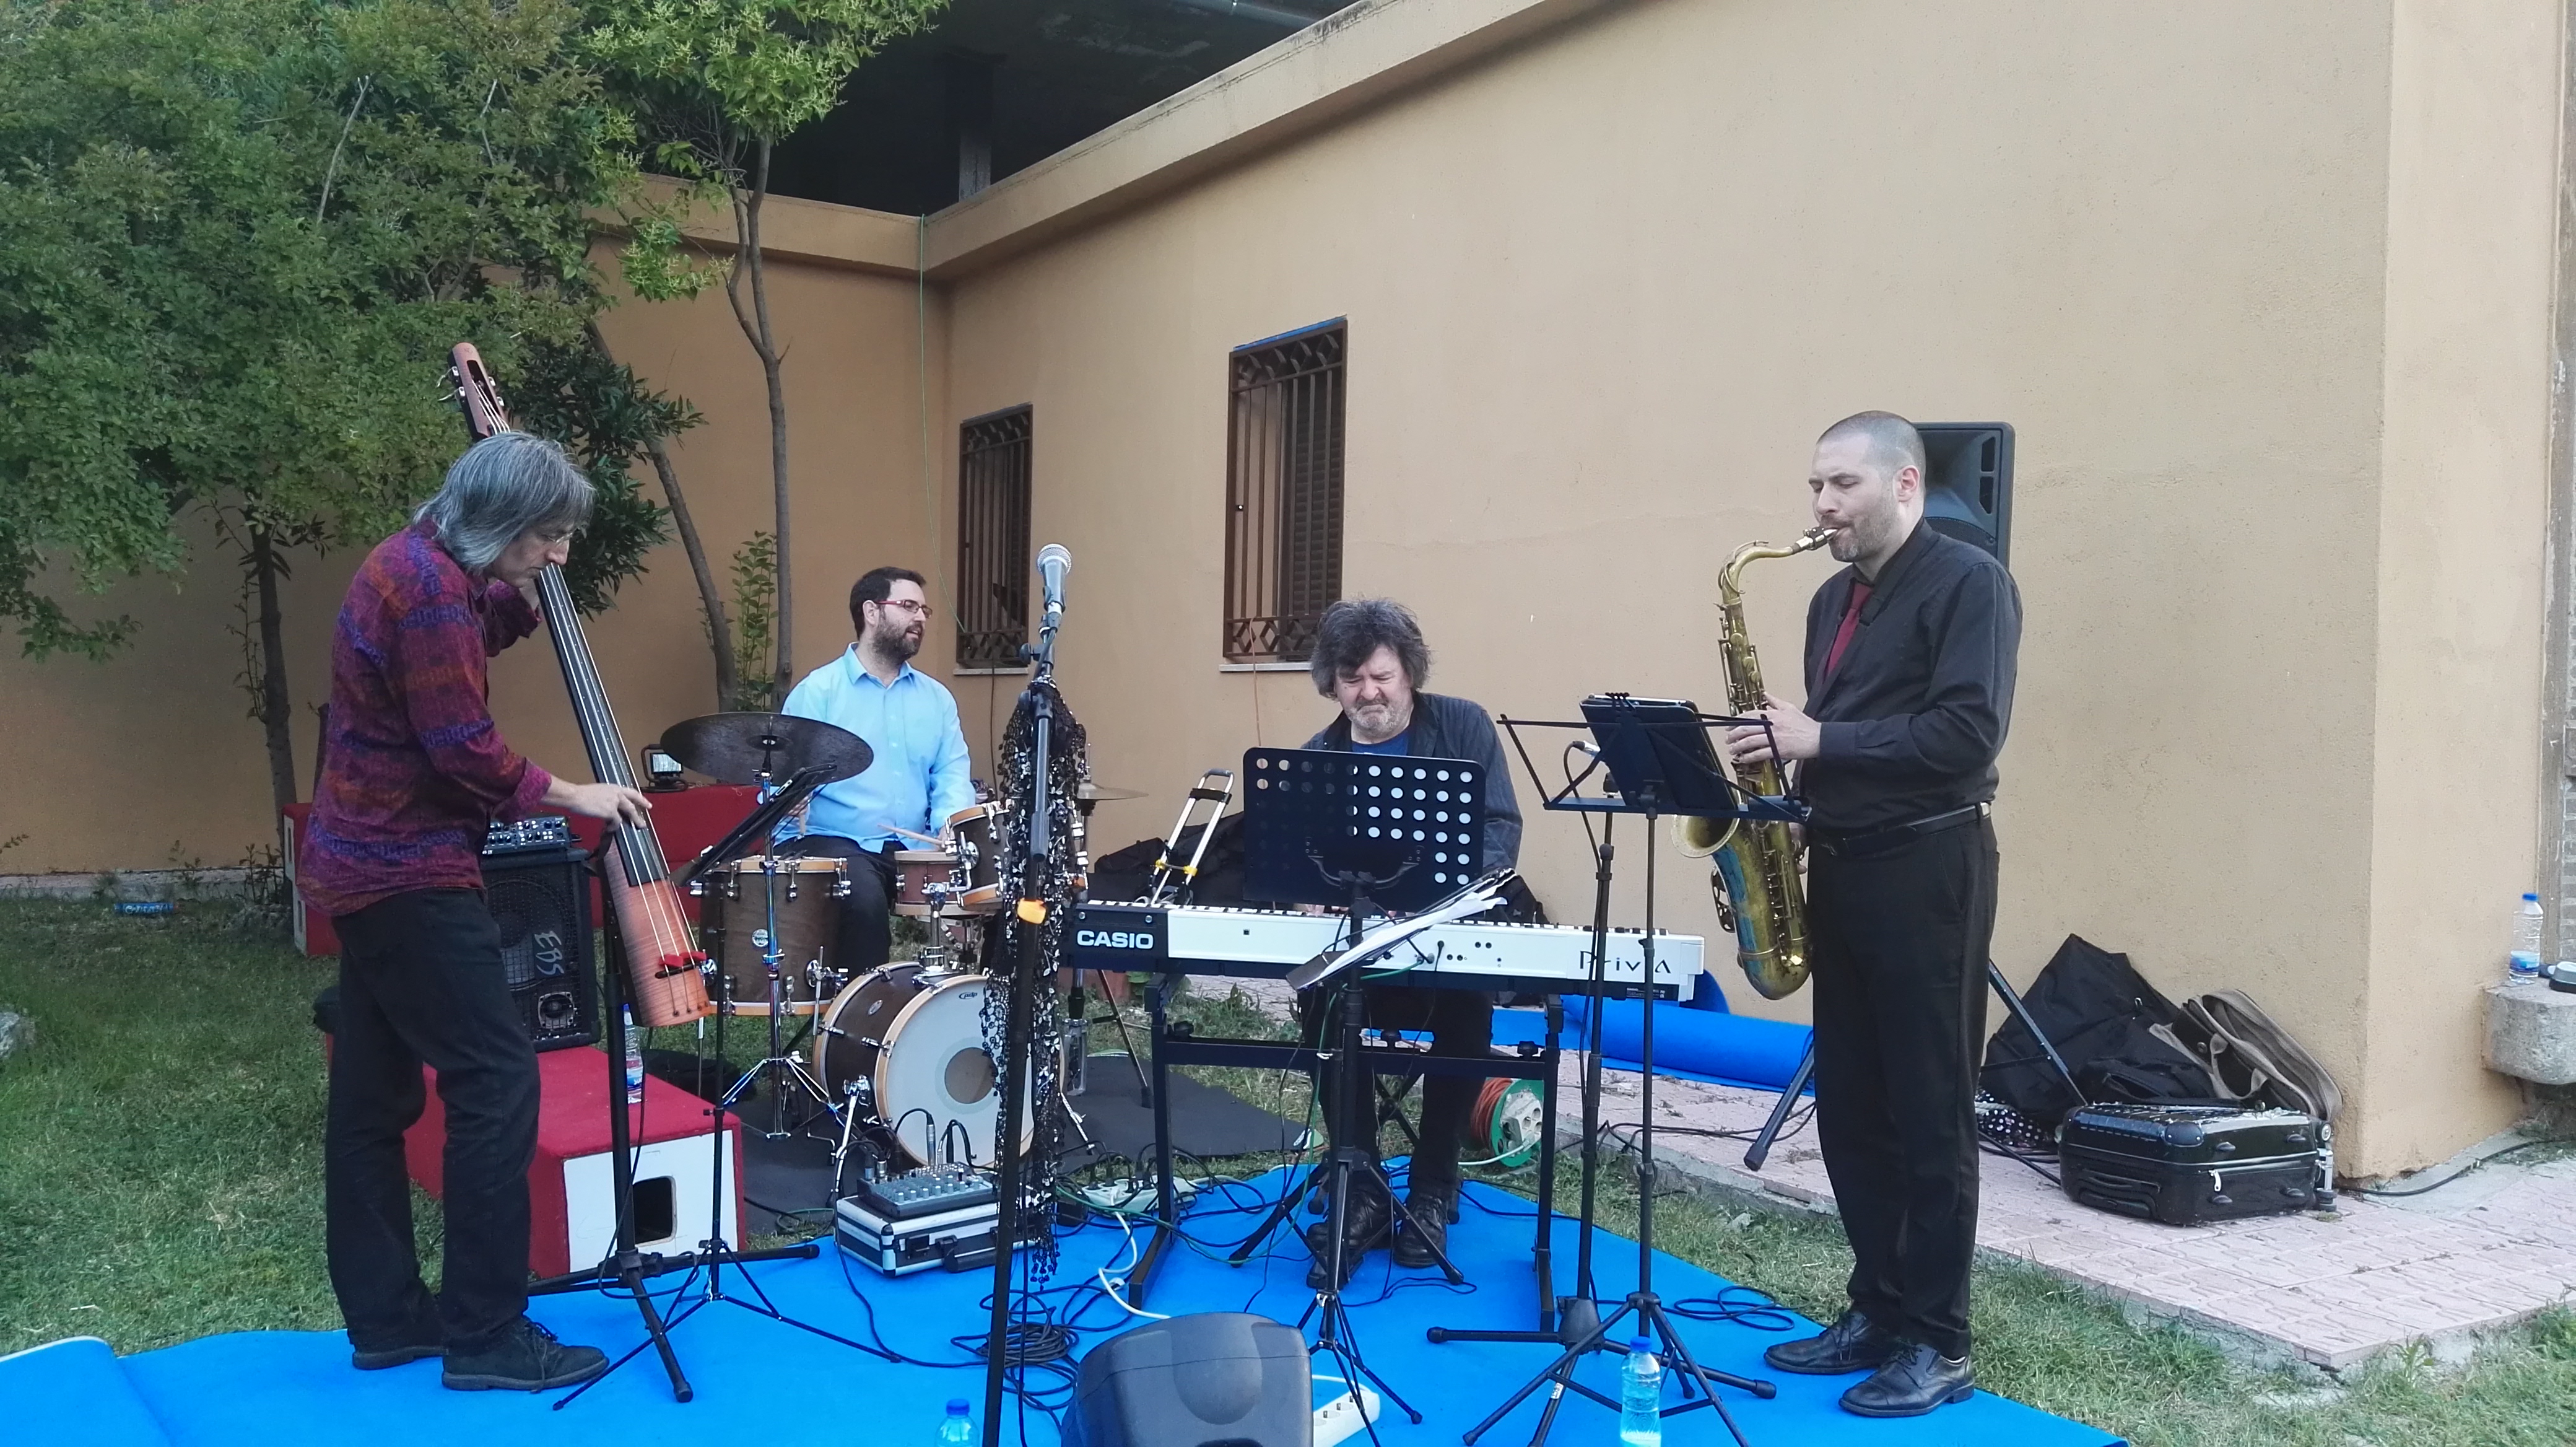 Amenizacion jazz - Cumpleaños Villavicioa de Odon